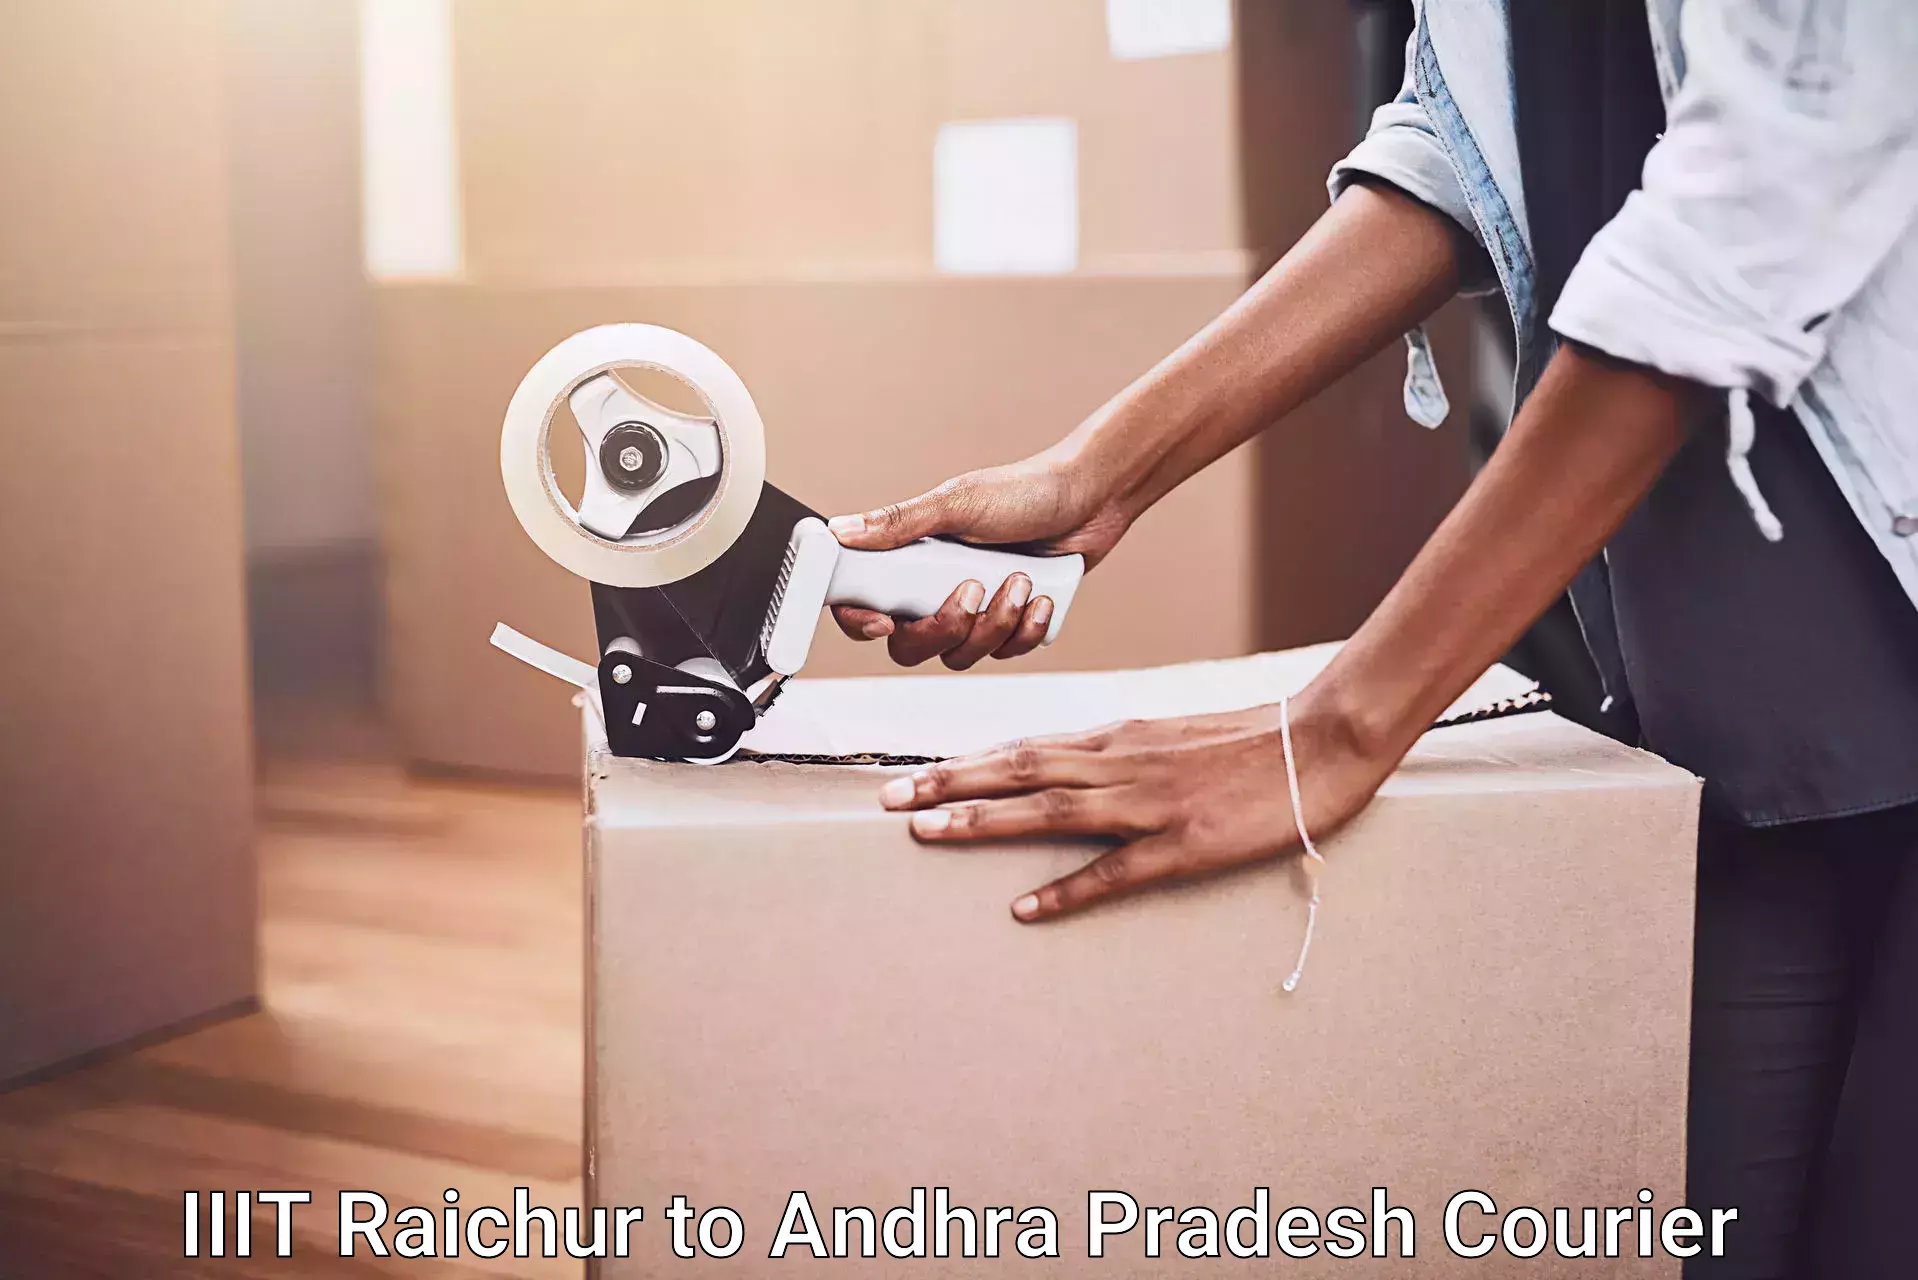 Budget-friendly movers IIIT Raichur to Gudivada